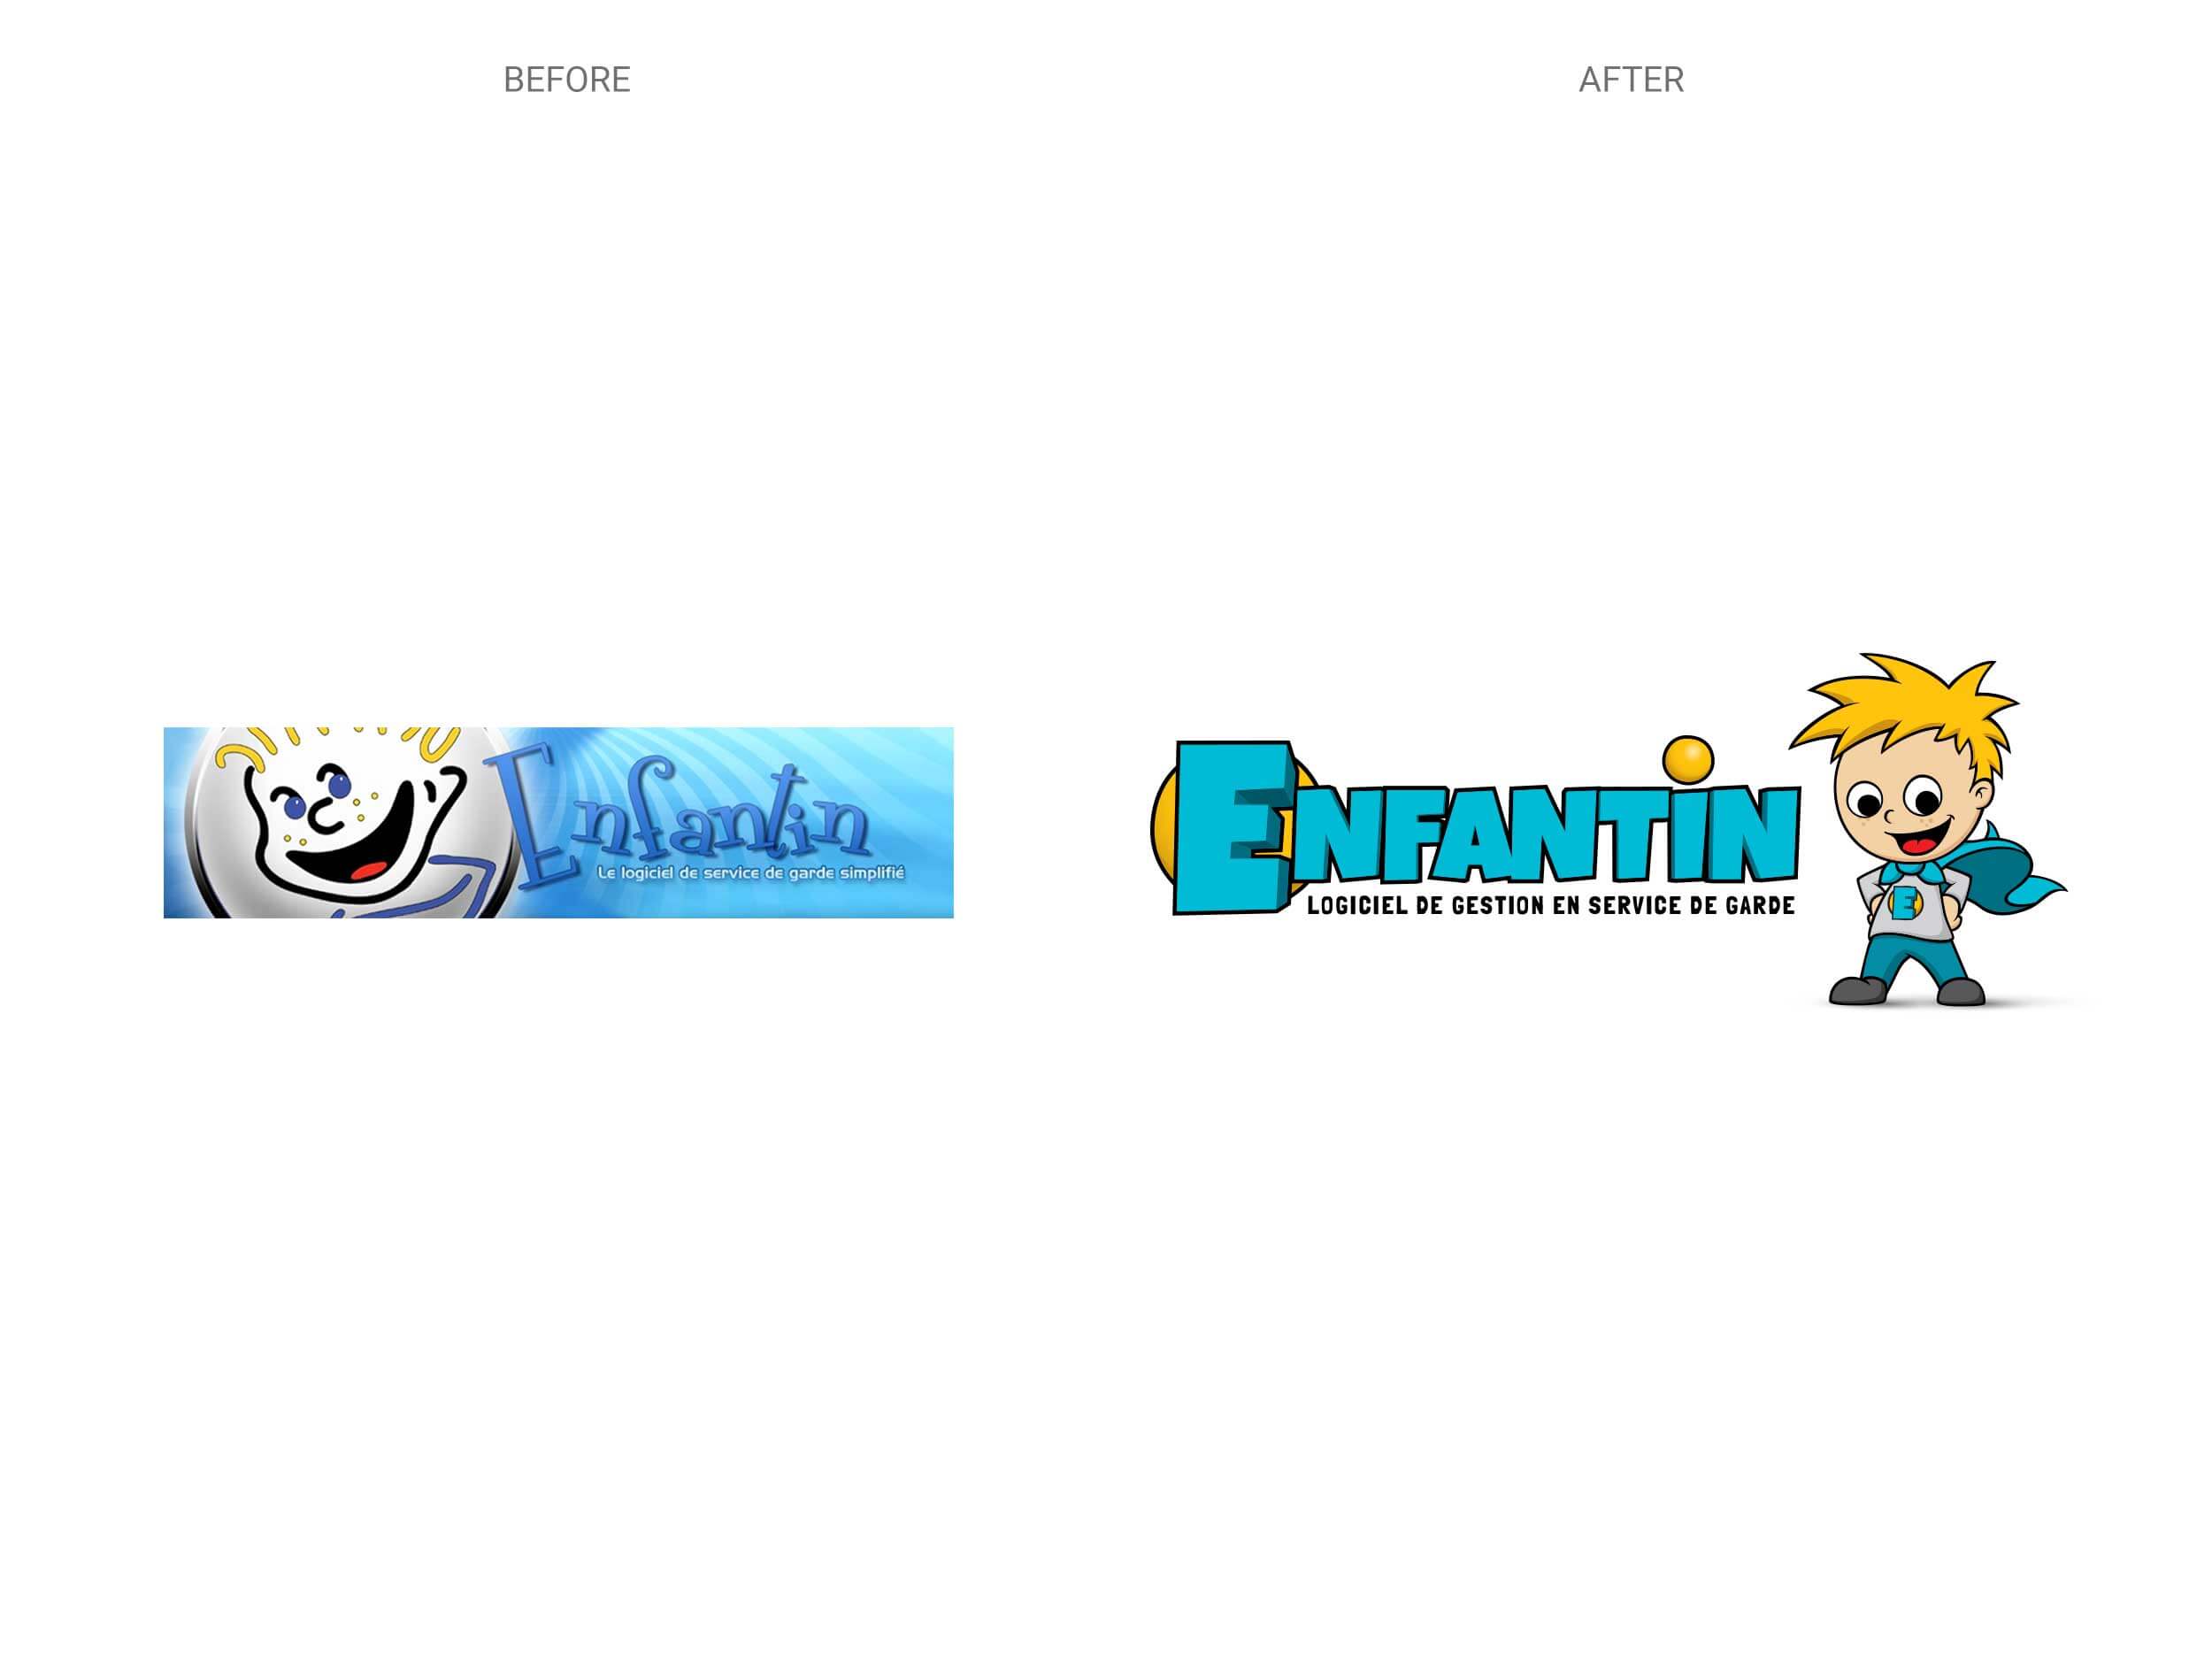 Enfantin – Logo – Before & After